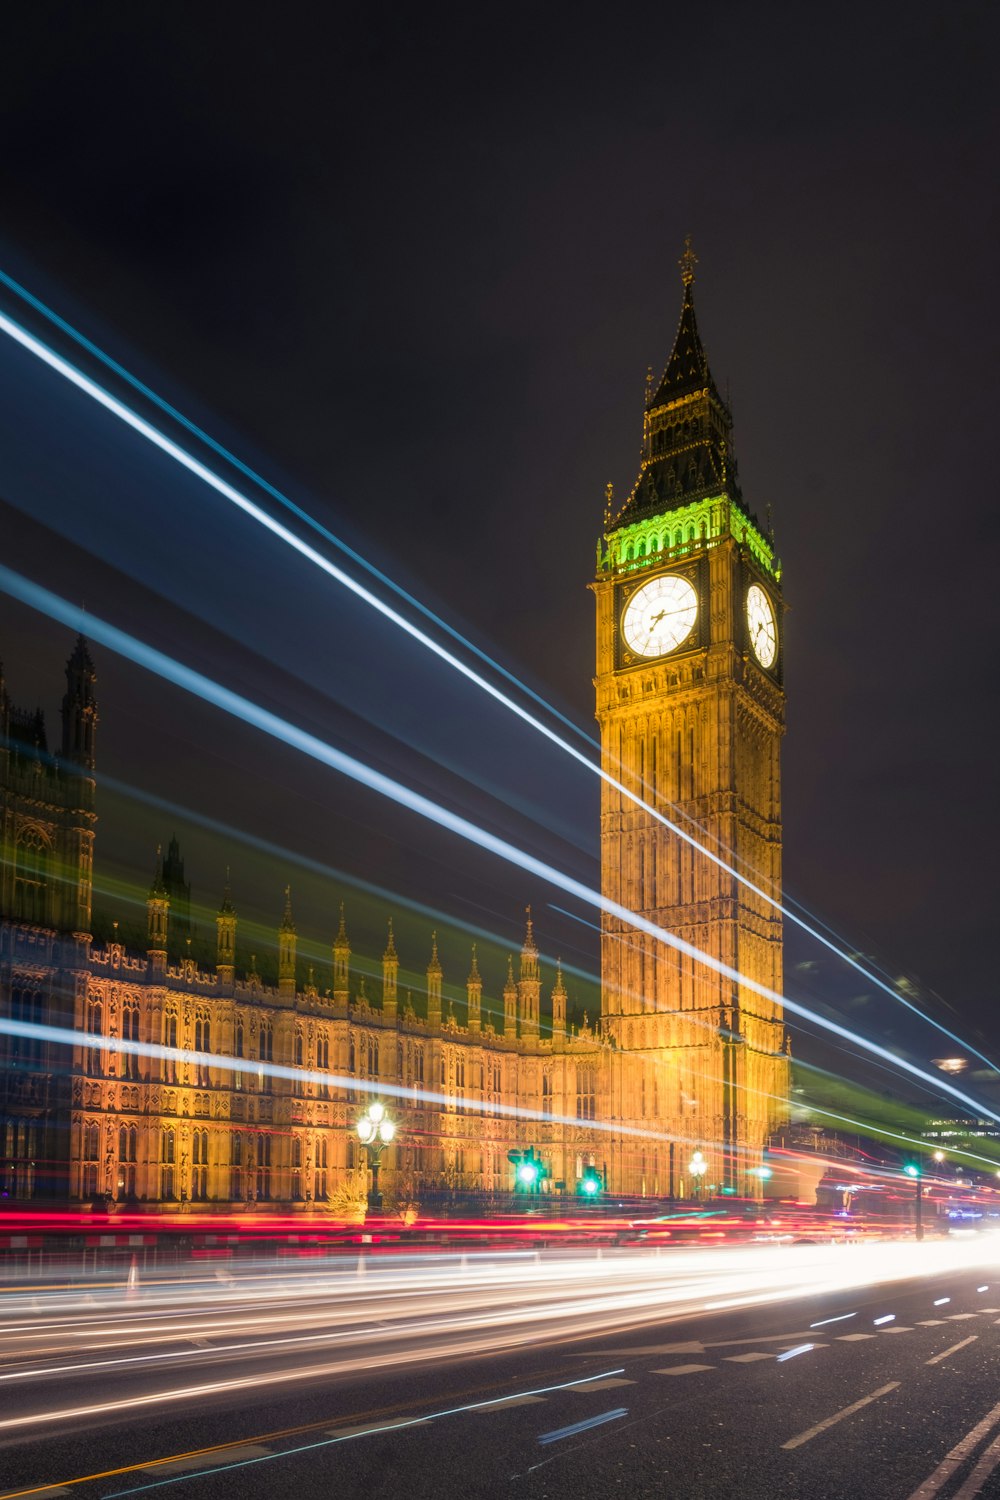 Der Big Ben Clock Tower thront über der City of London